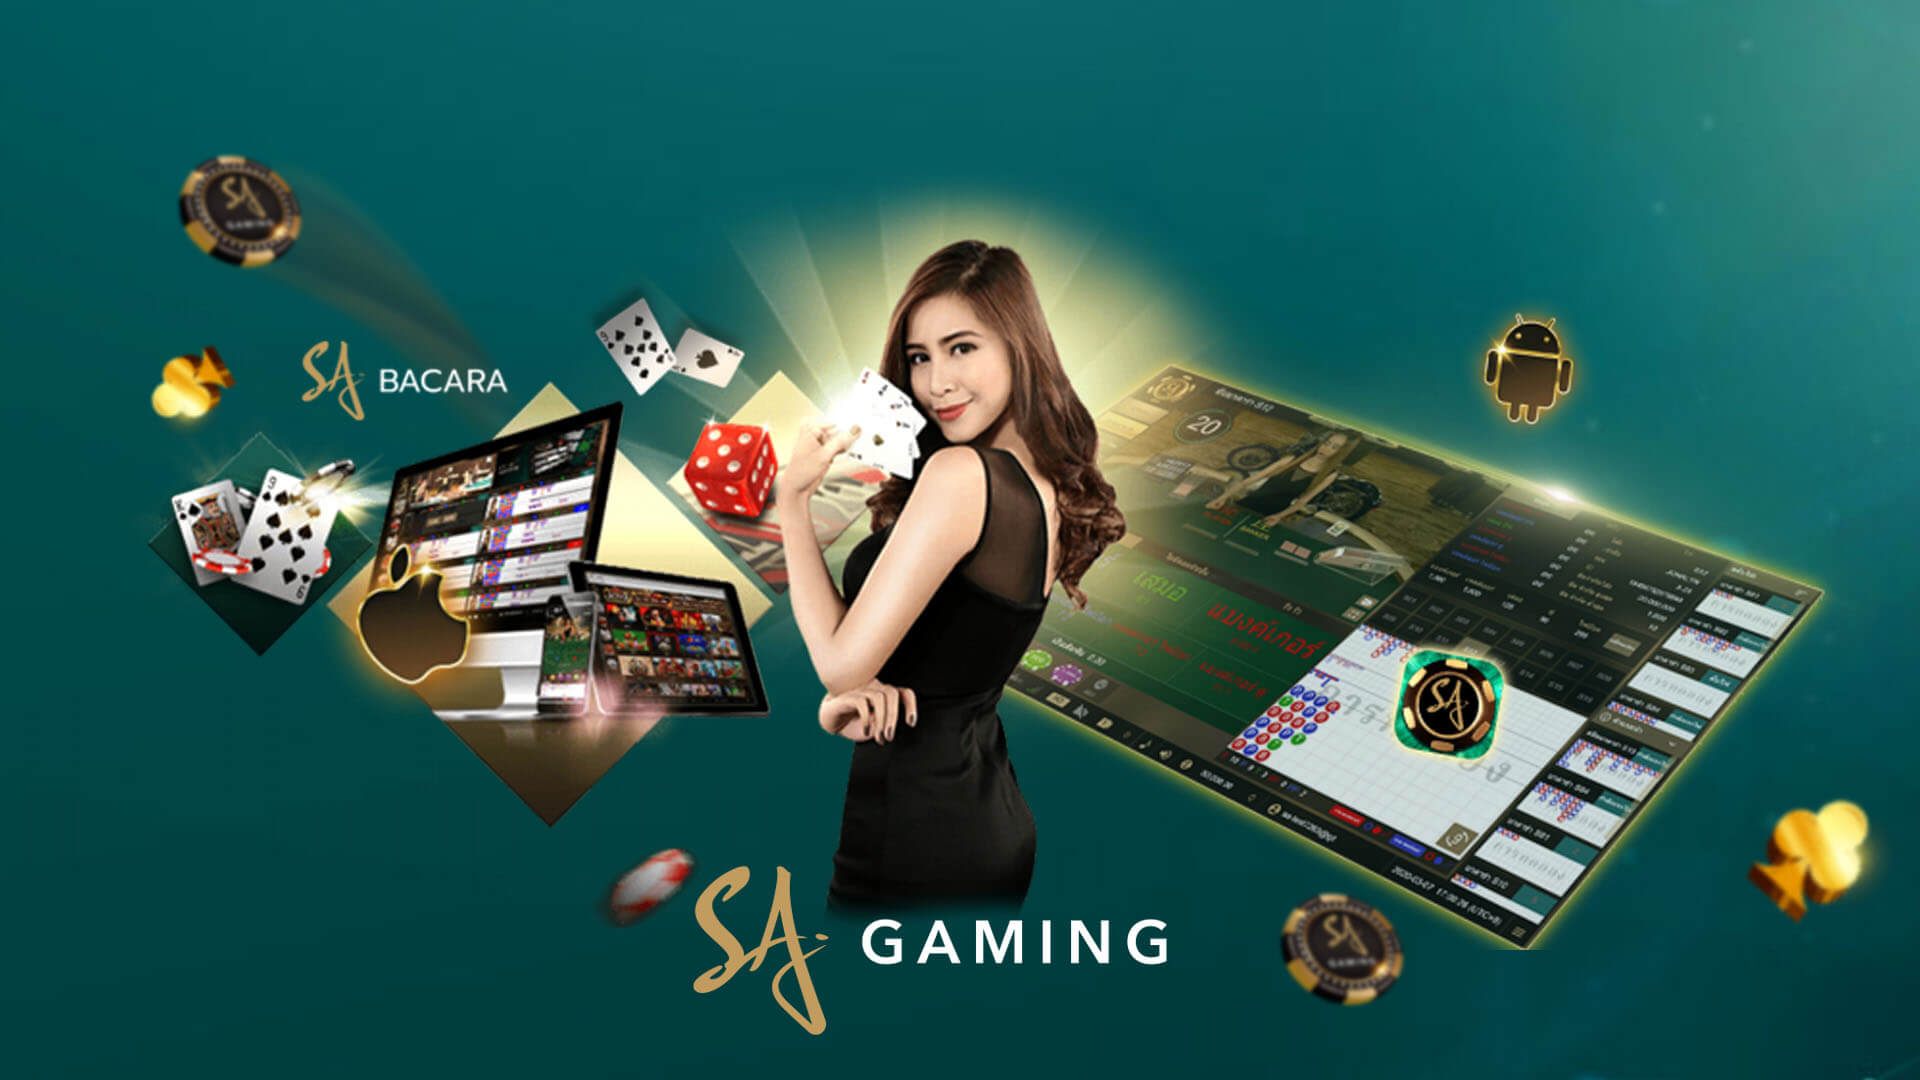 SA Gaming Thai